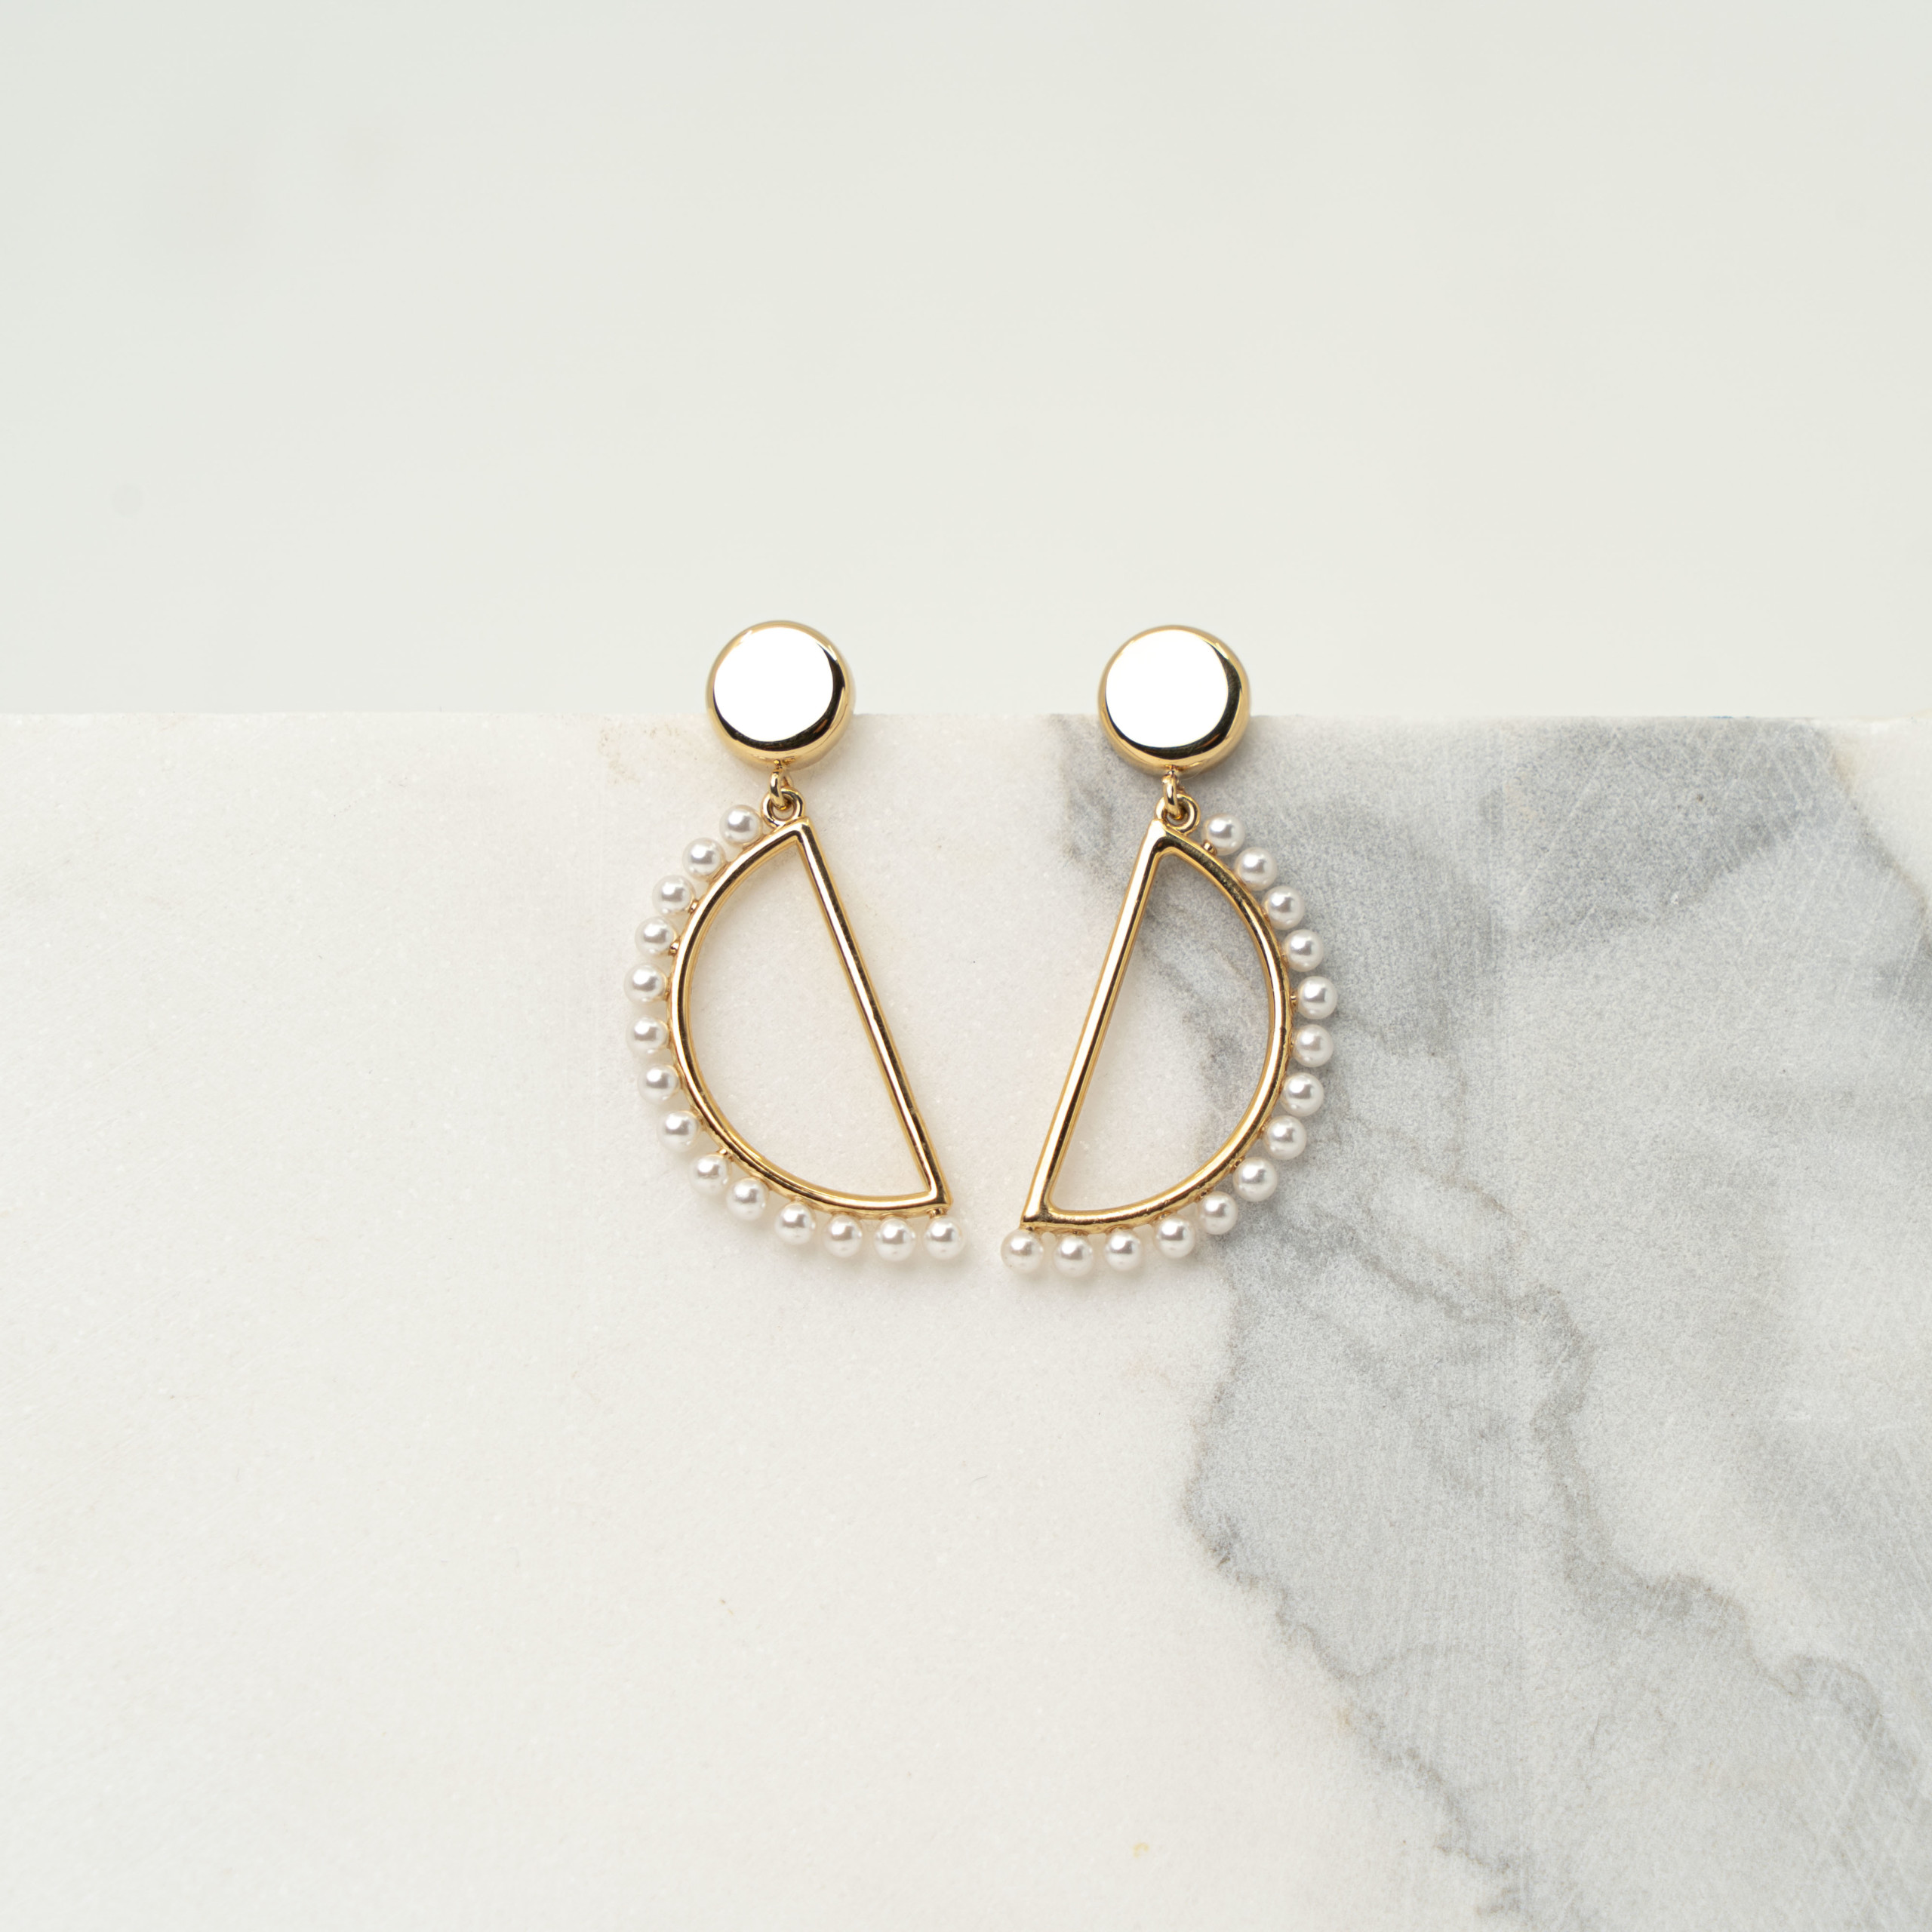 Luna pearl gold earrings